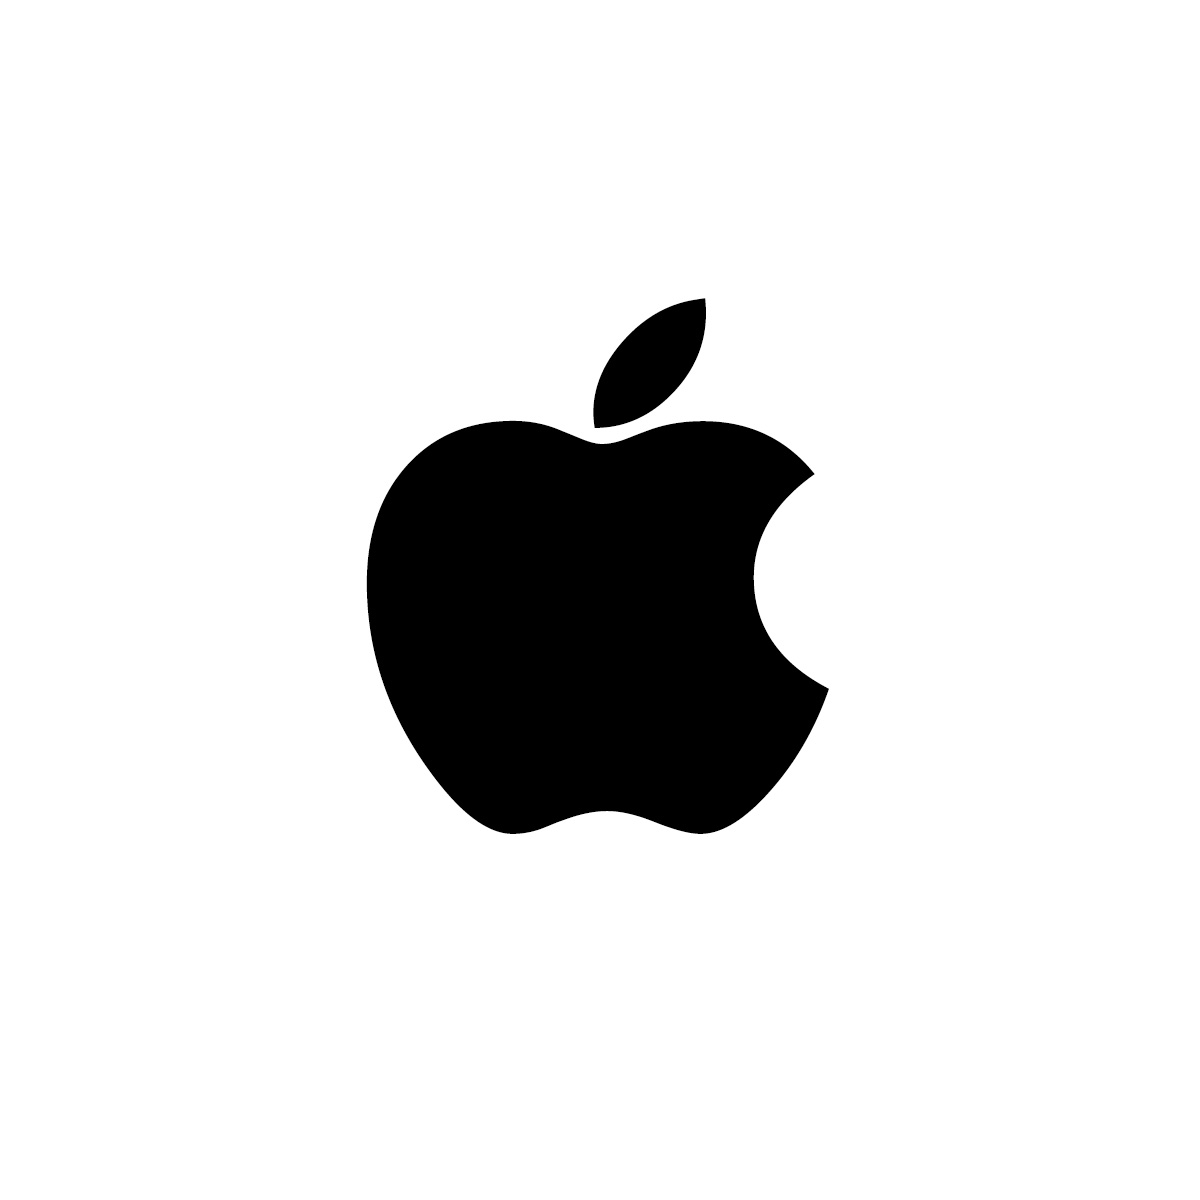 بتای عمومی اول iOS 9.2.1 منتشر شد - تکفارس 